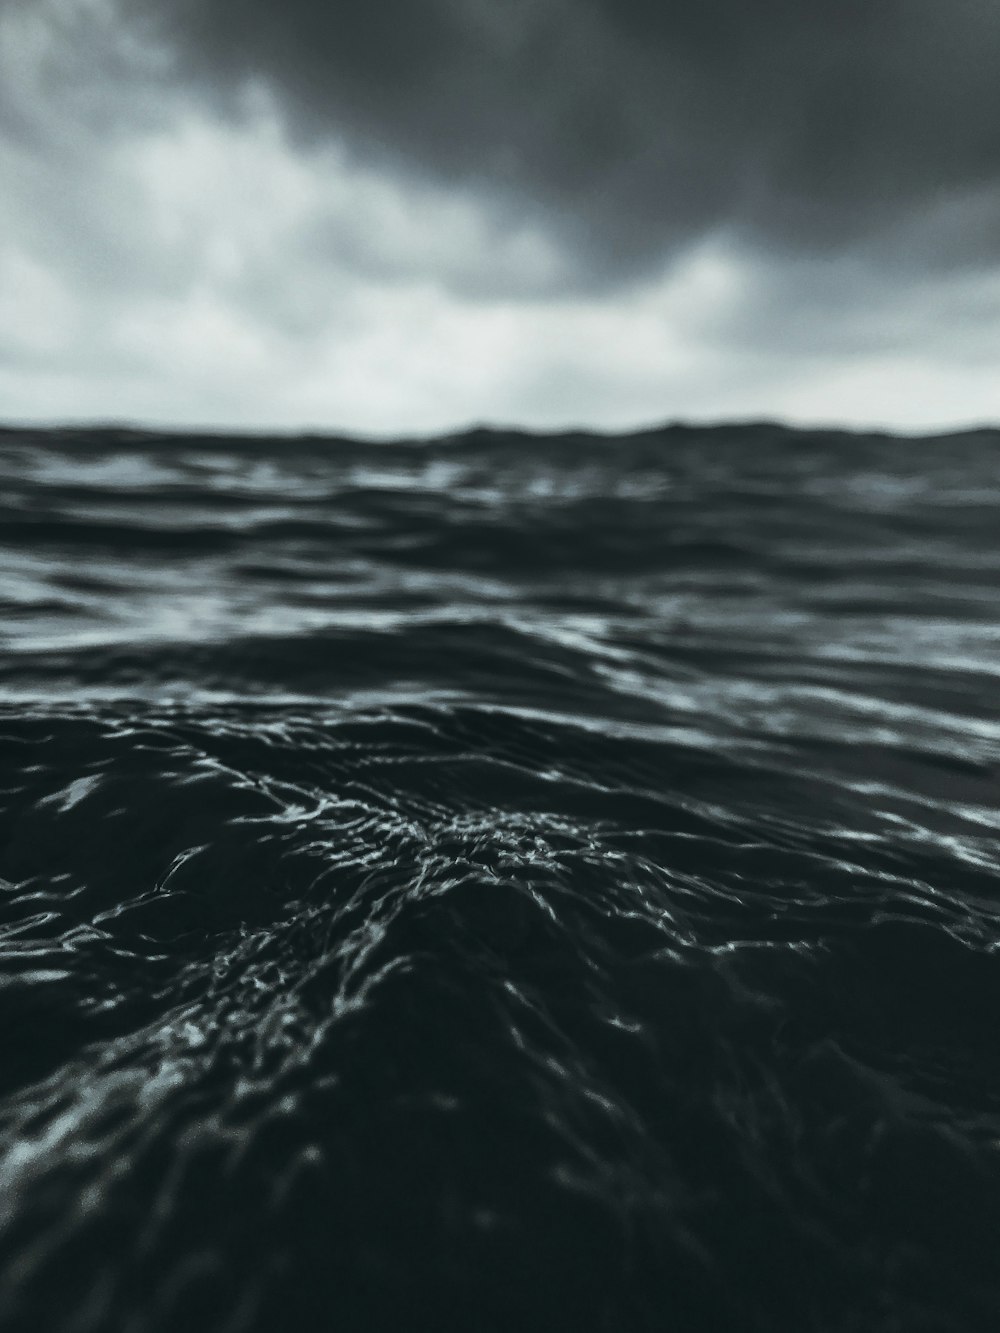 onde d'acqua nella fotografia ravvicinata